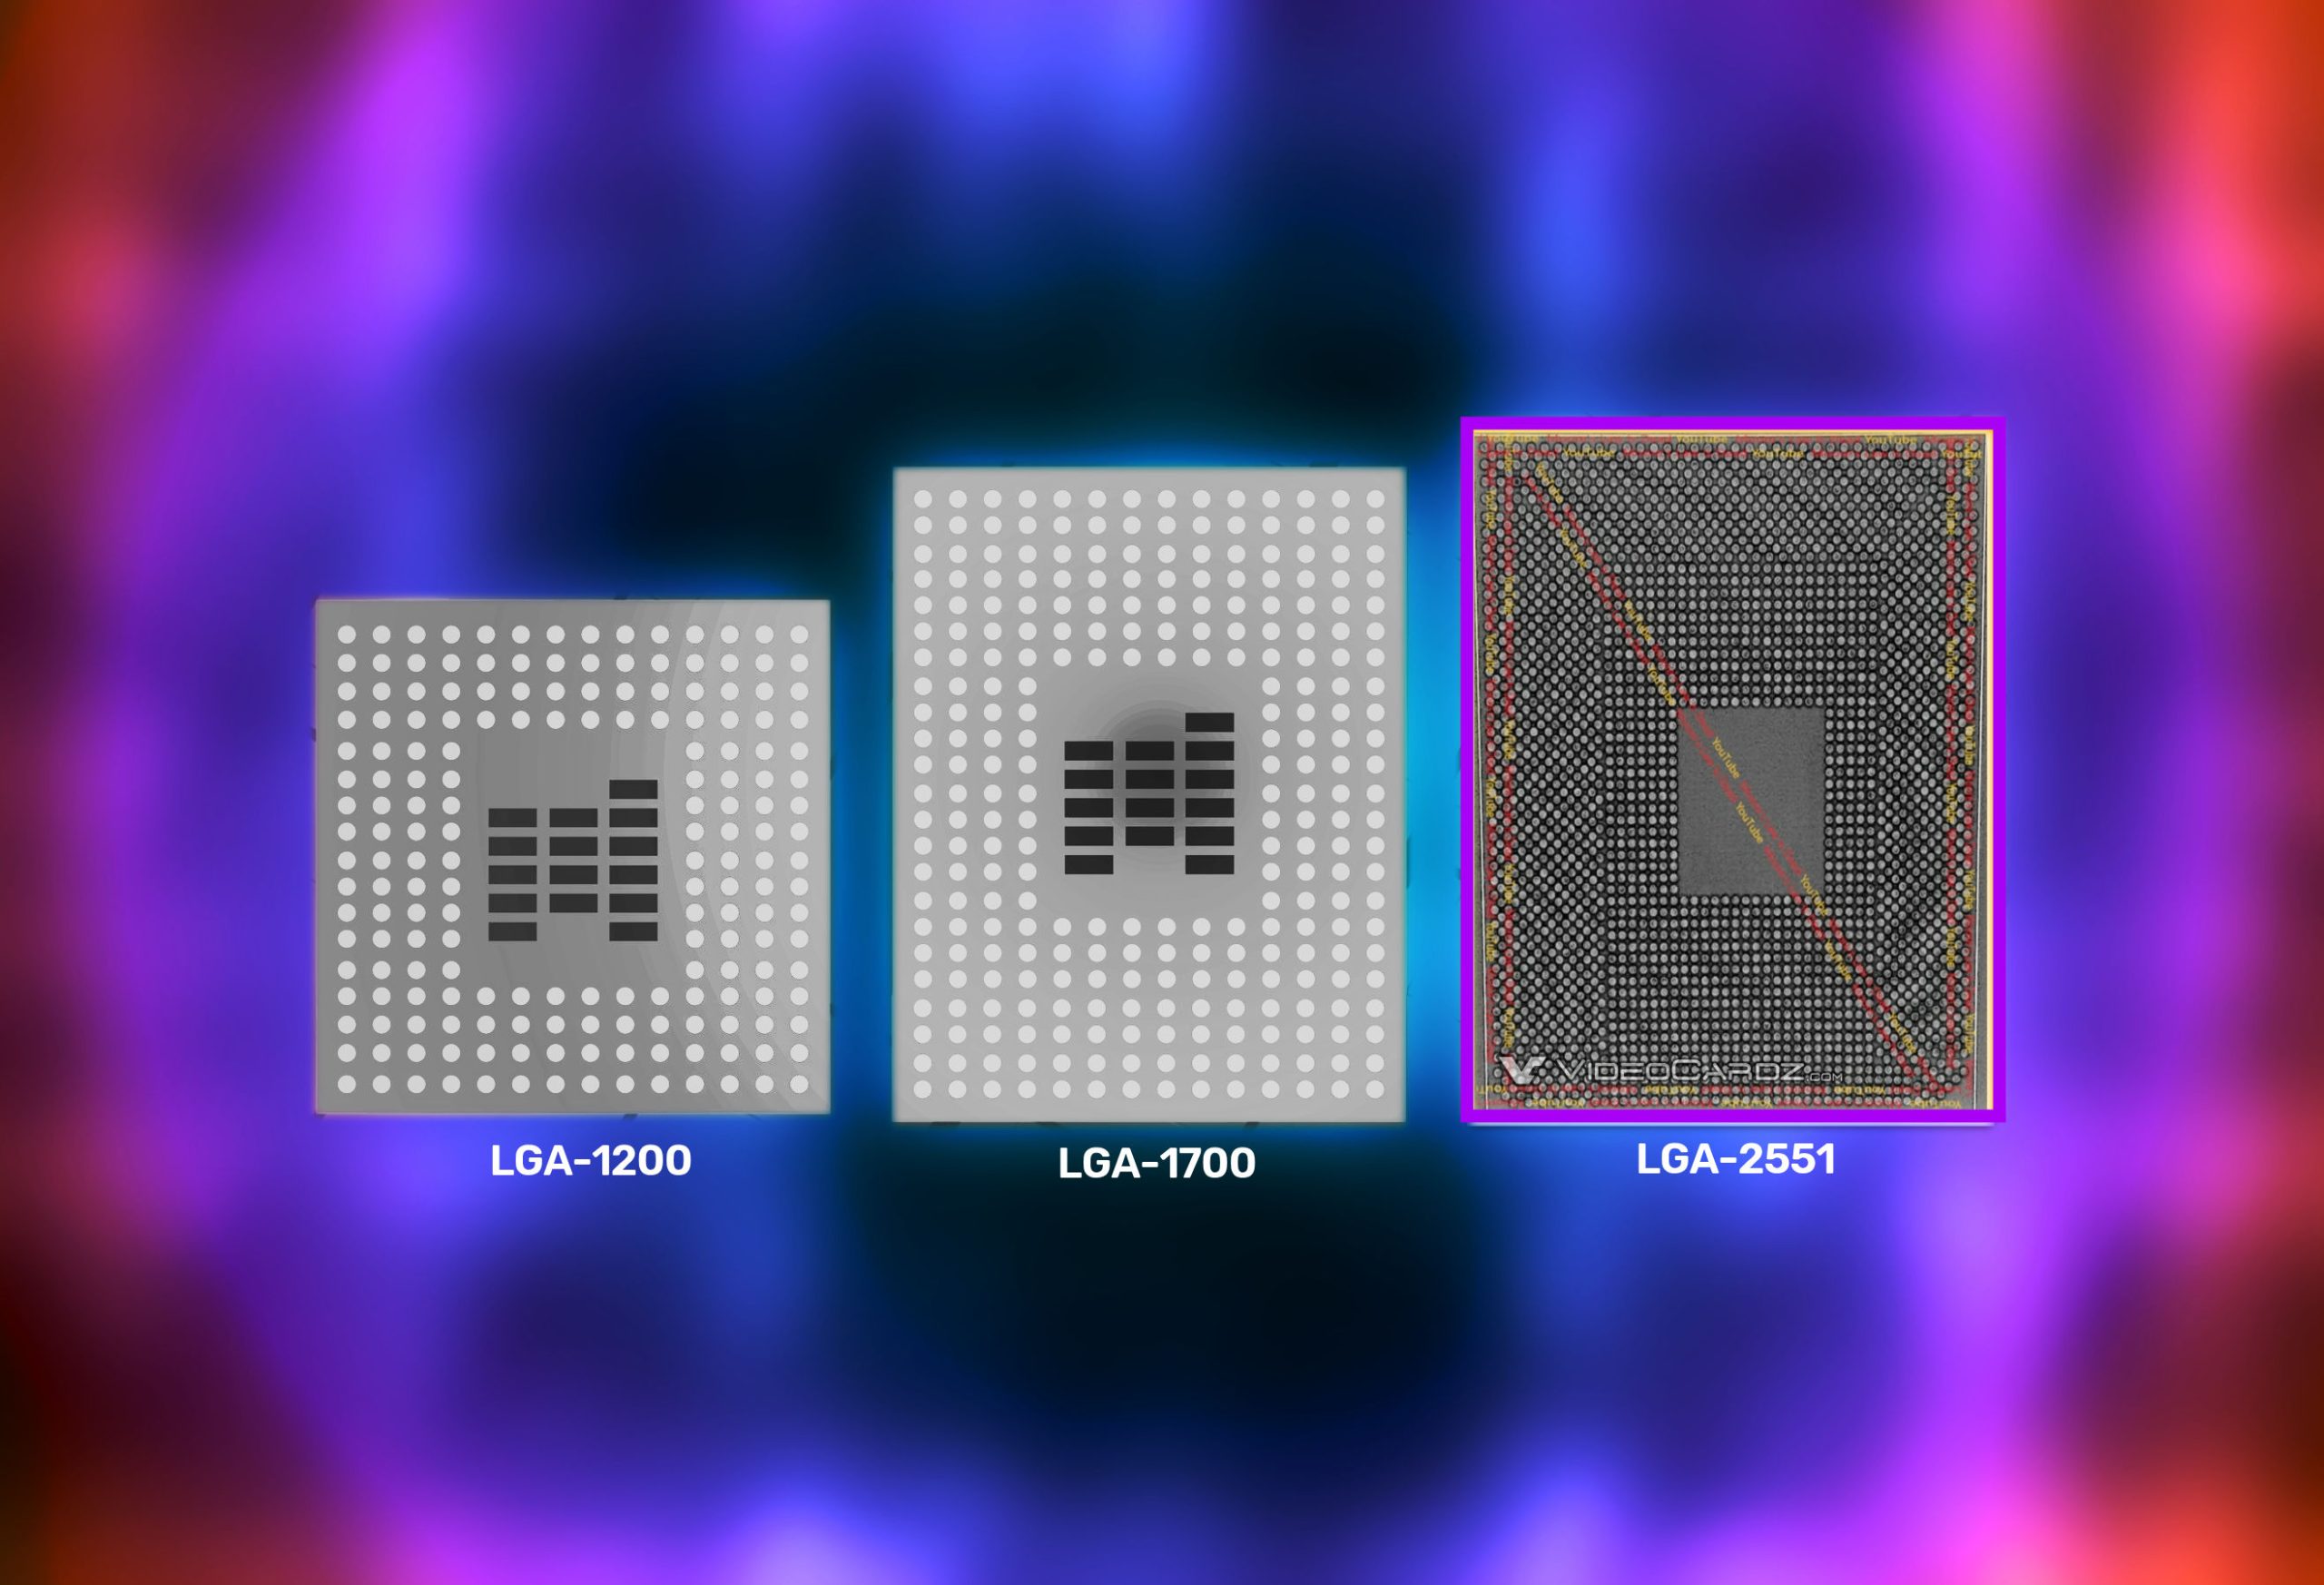 Il desktop Intel "Meteor Lake" di 14a generazione richiede presumibilmente un nuovo socket LGA-2551